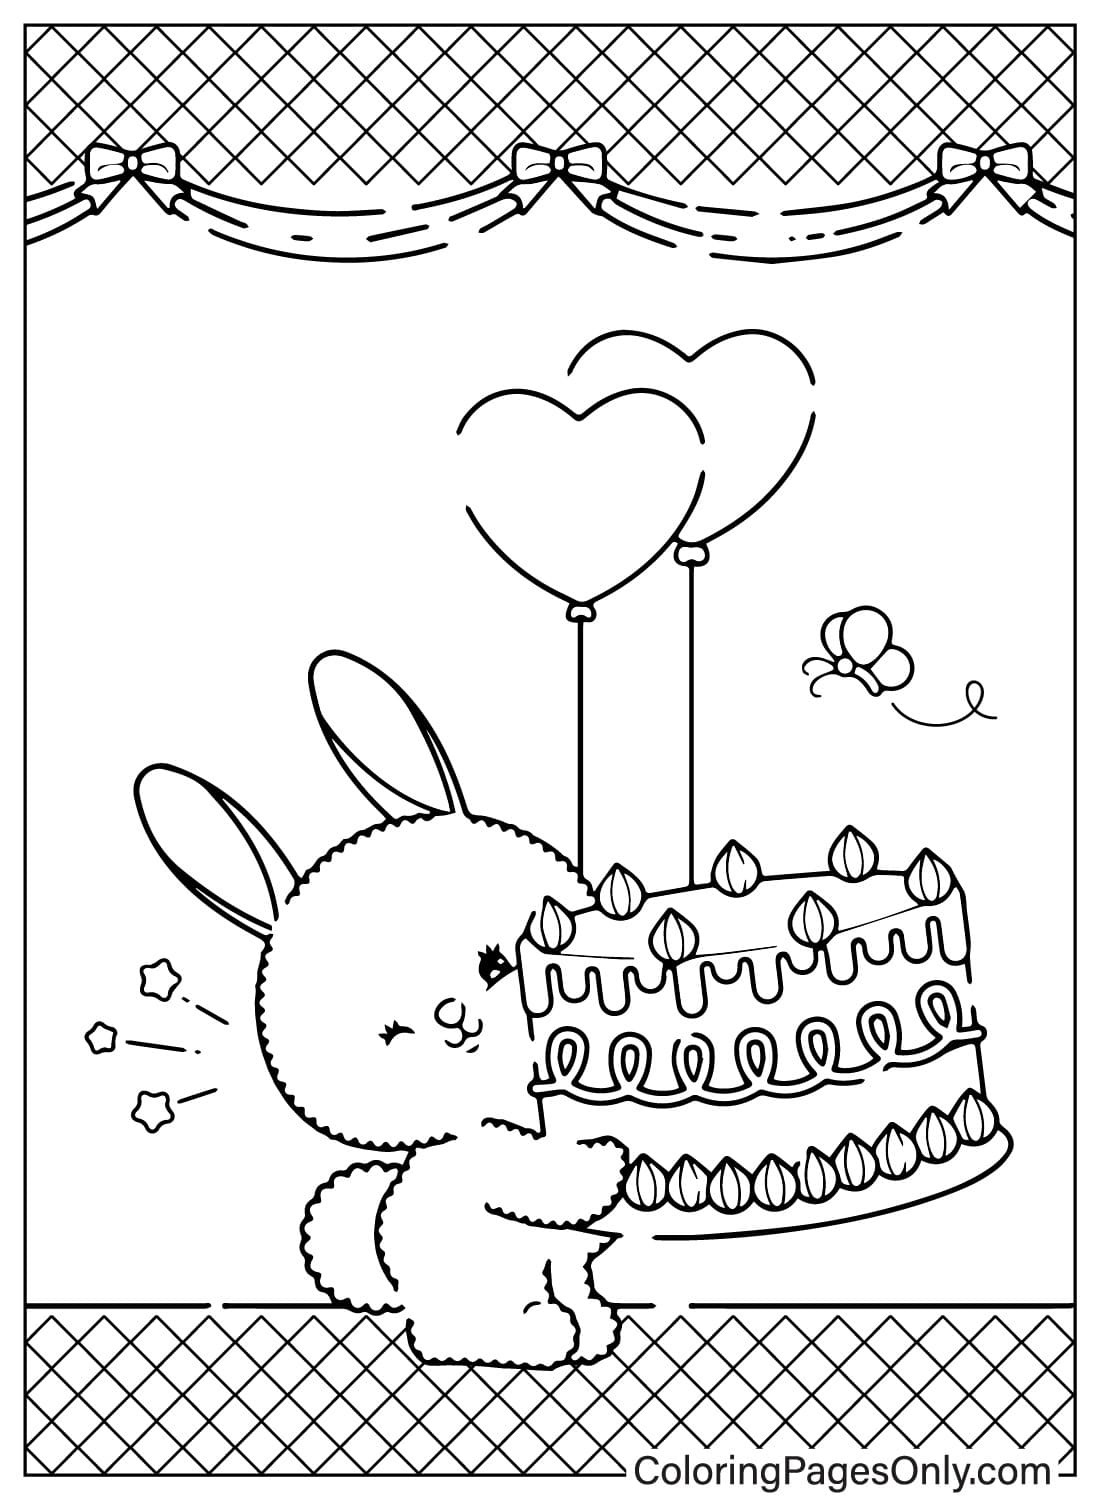 Cartão de feliz aniversário para colorir grátis do cartão de feliz aniversário